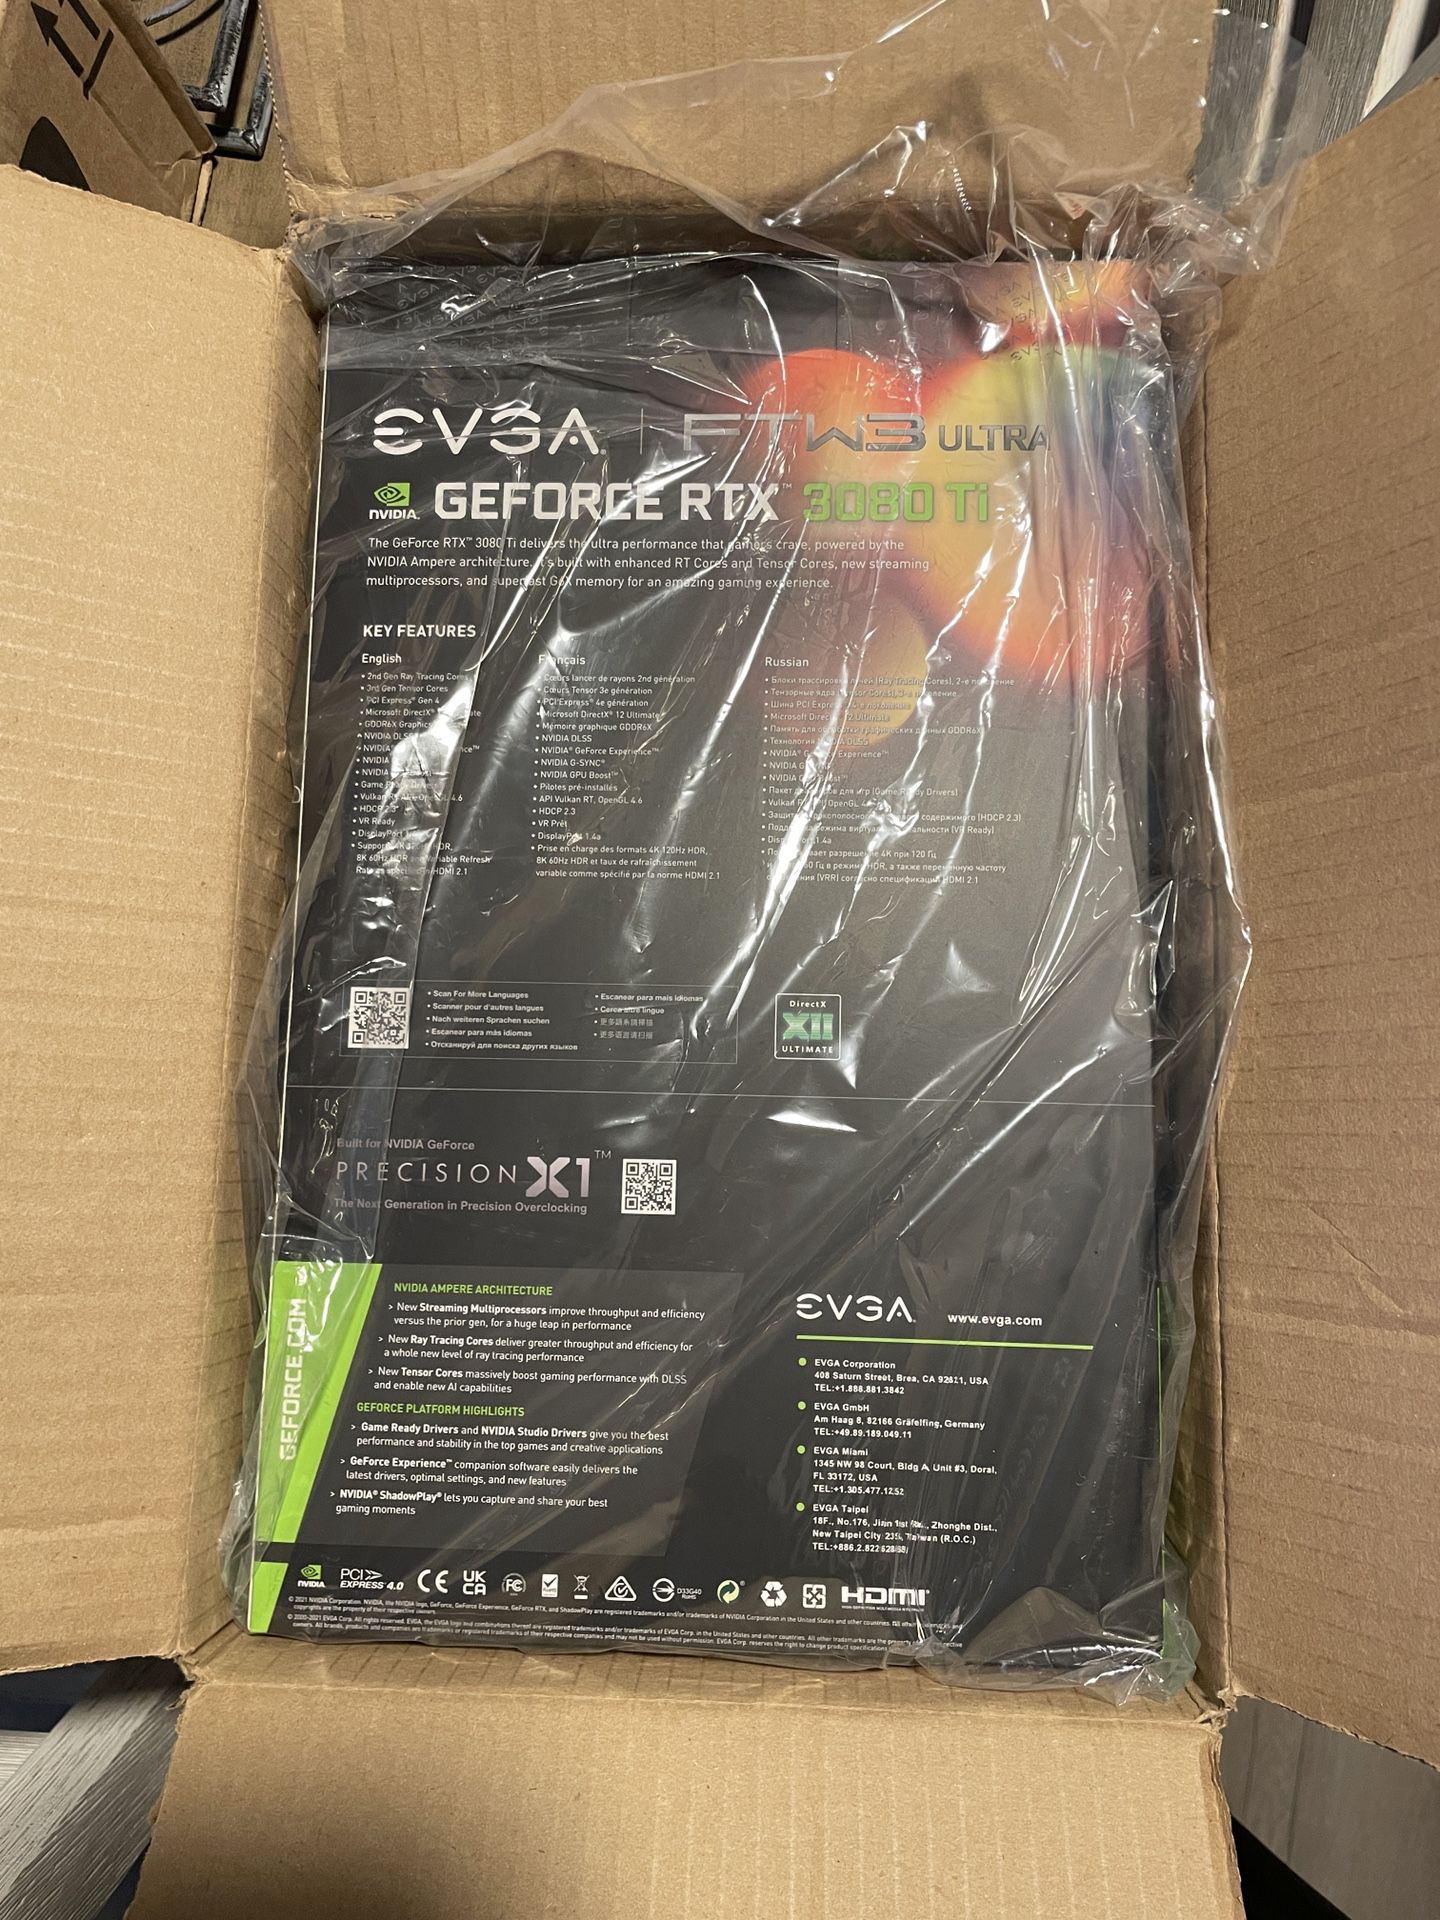 EVGA GeForce RTX 3080 Ti FTW3 Ultra